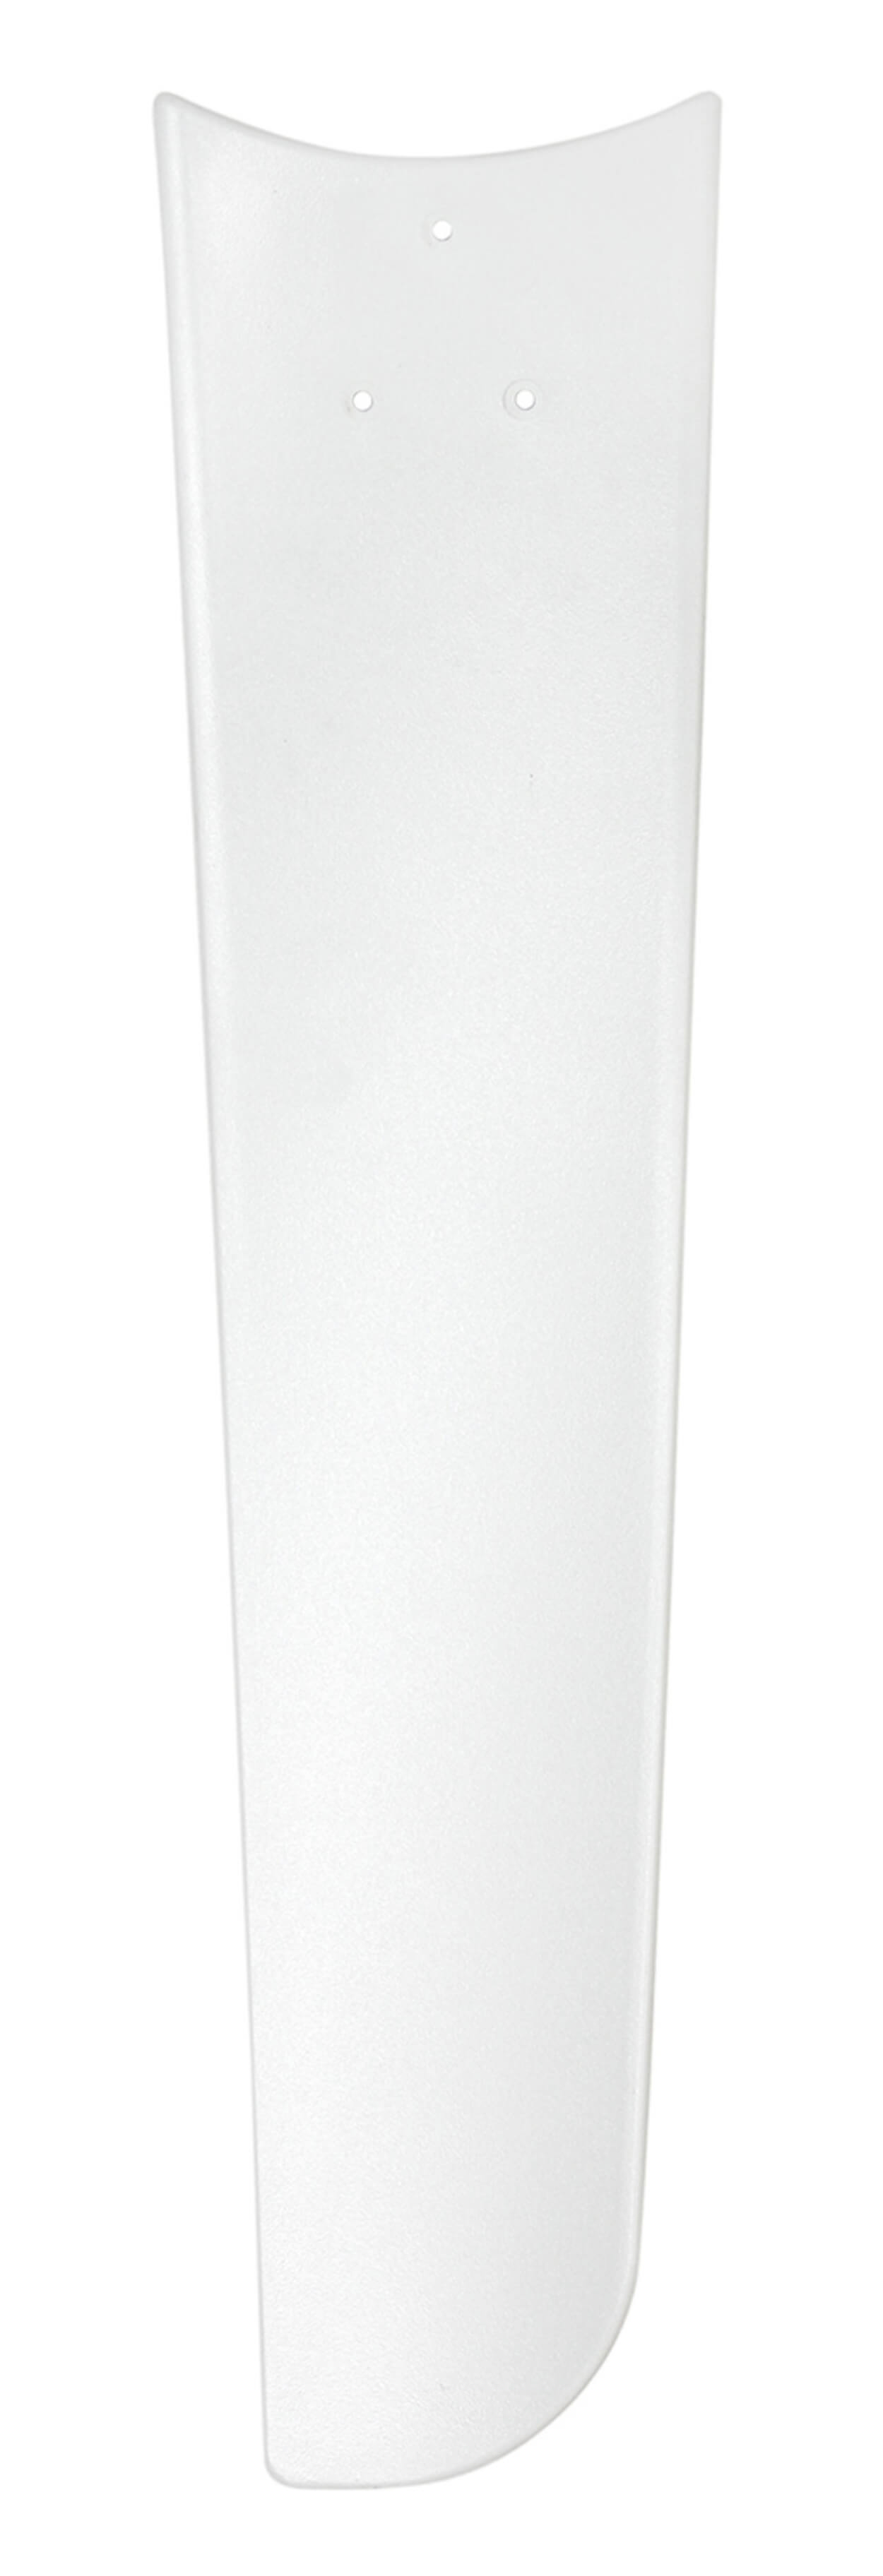 CASAFAN Weiß Deckenventilator (62 Mirage Watt)